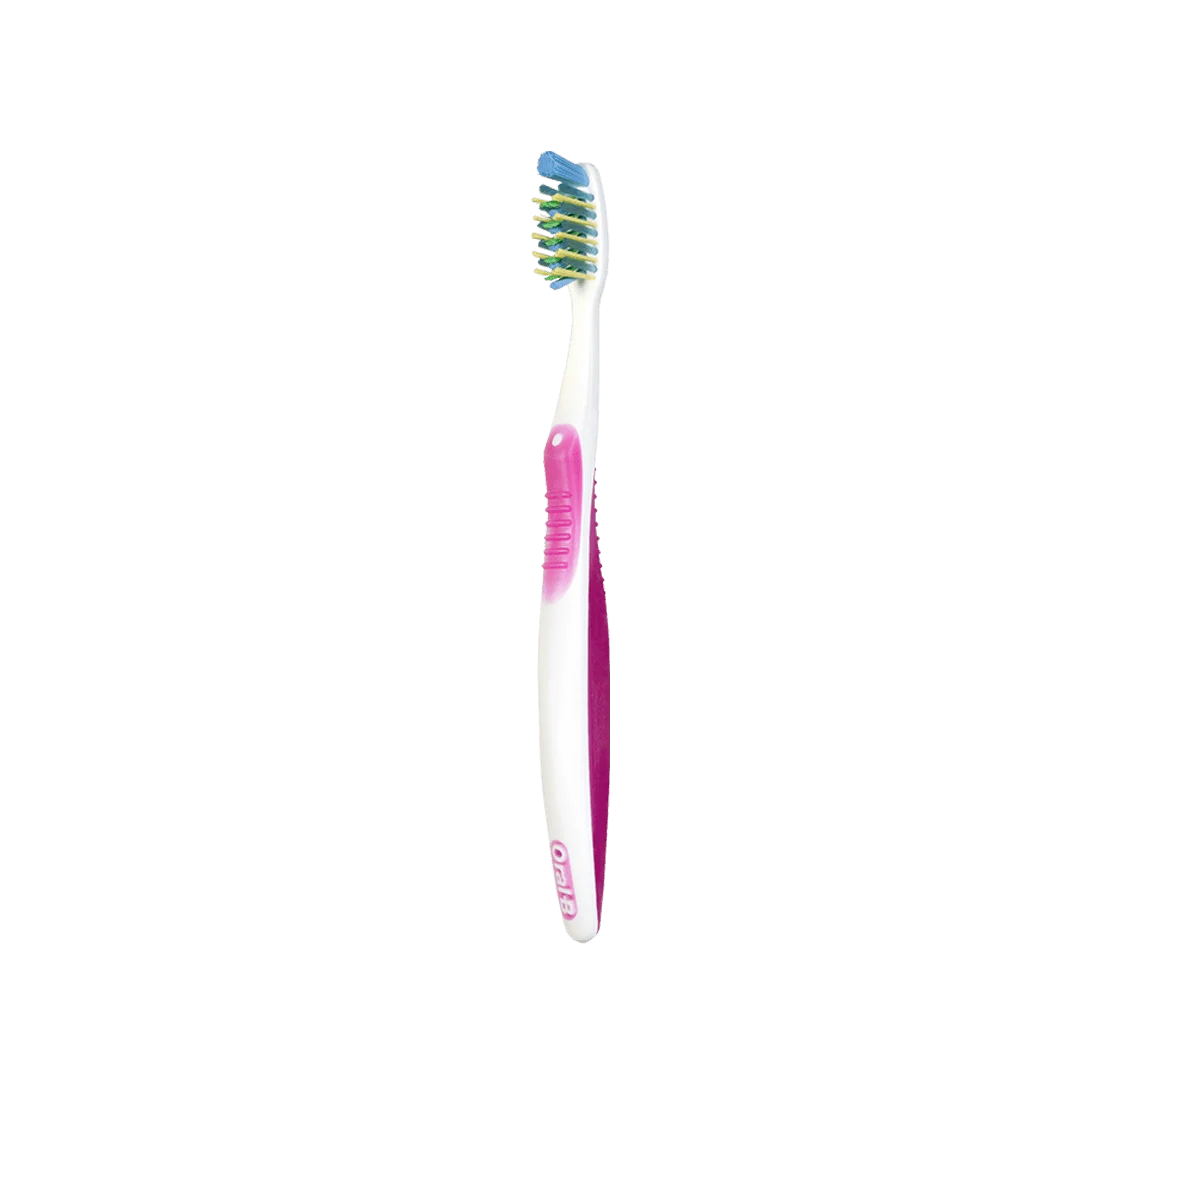 Cepillo de dientes Pro-Health de Oral-B, Suave